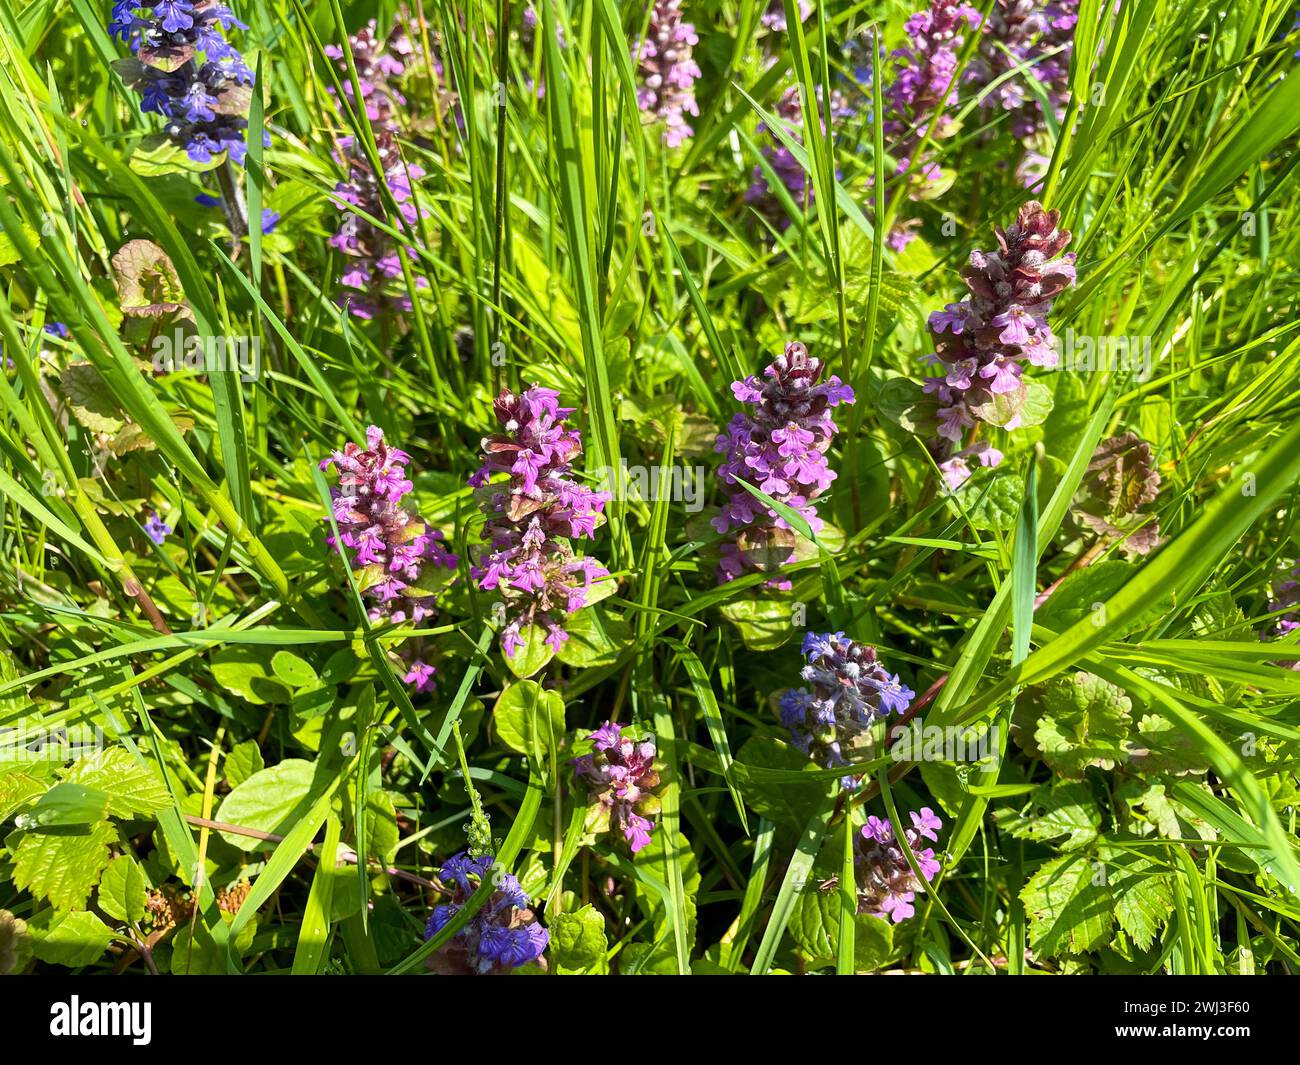 Kriechender Günsel mit blauen und violett farbenen Blüten auf einer Wiese Banque D'Images